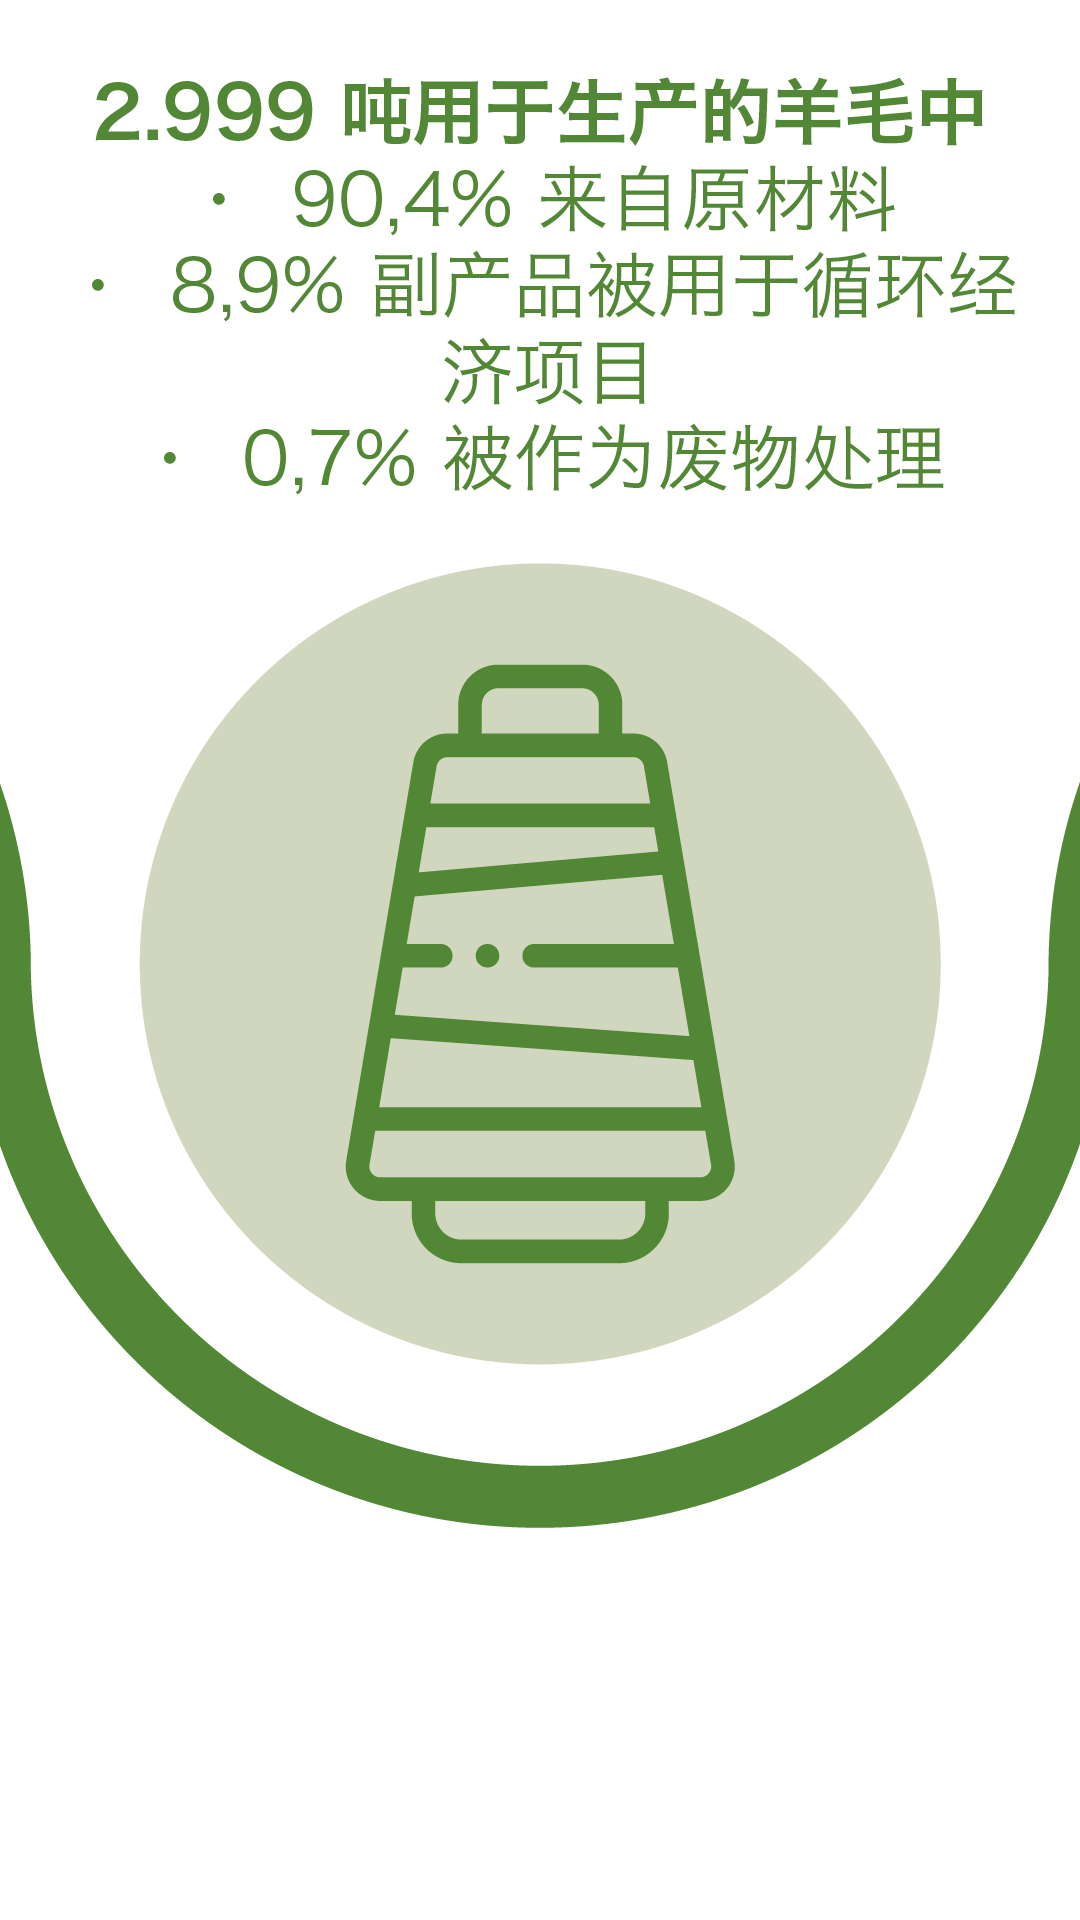 2.999 吨用于生产的羊毛中, 90,4% 来自原材料, 8,9% 副产品被用于循环经济项目, 0,7% 被作为废物处理 